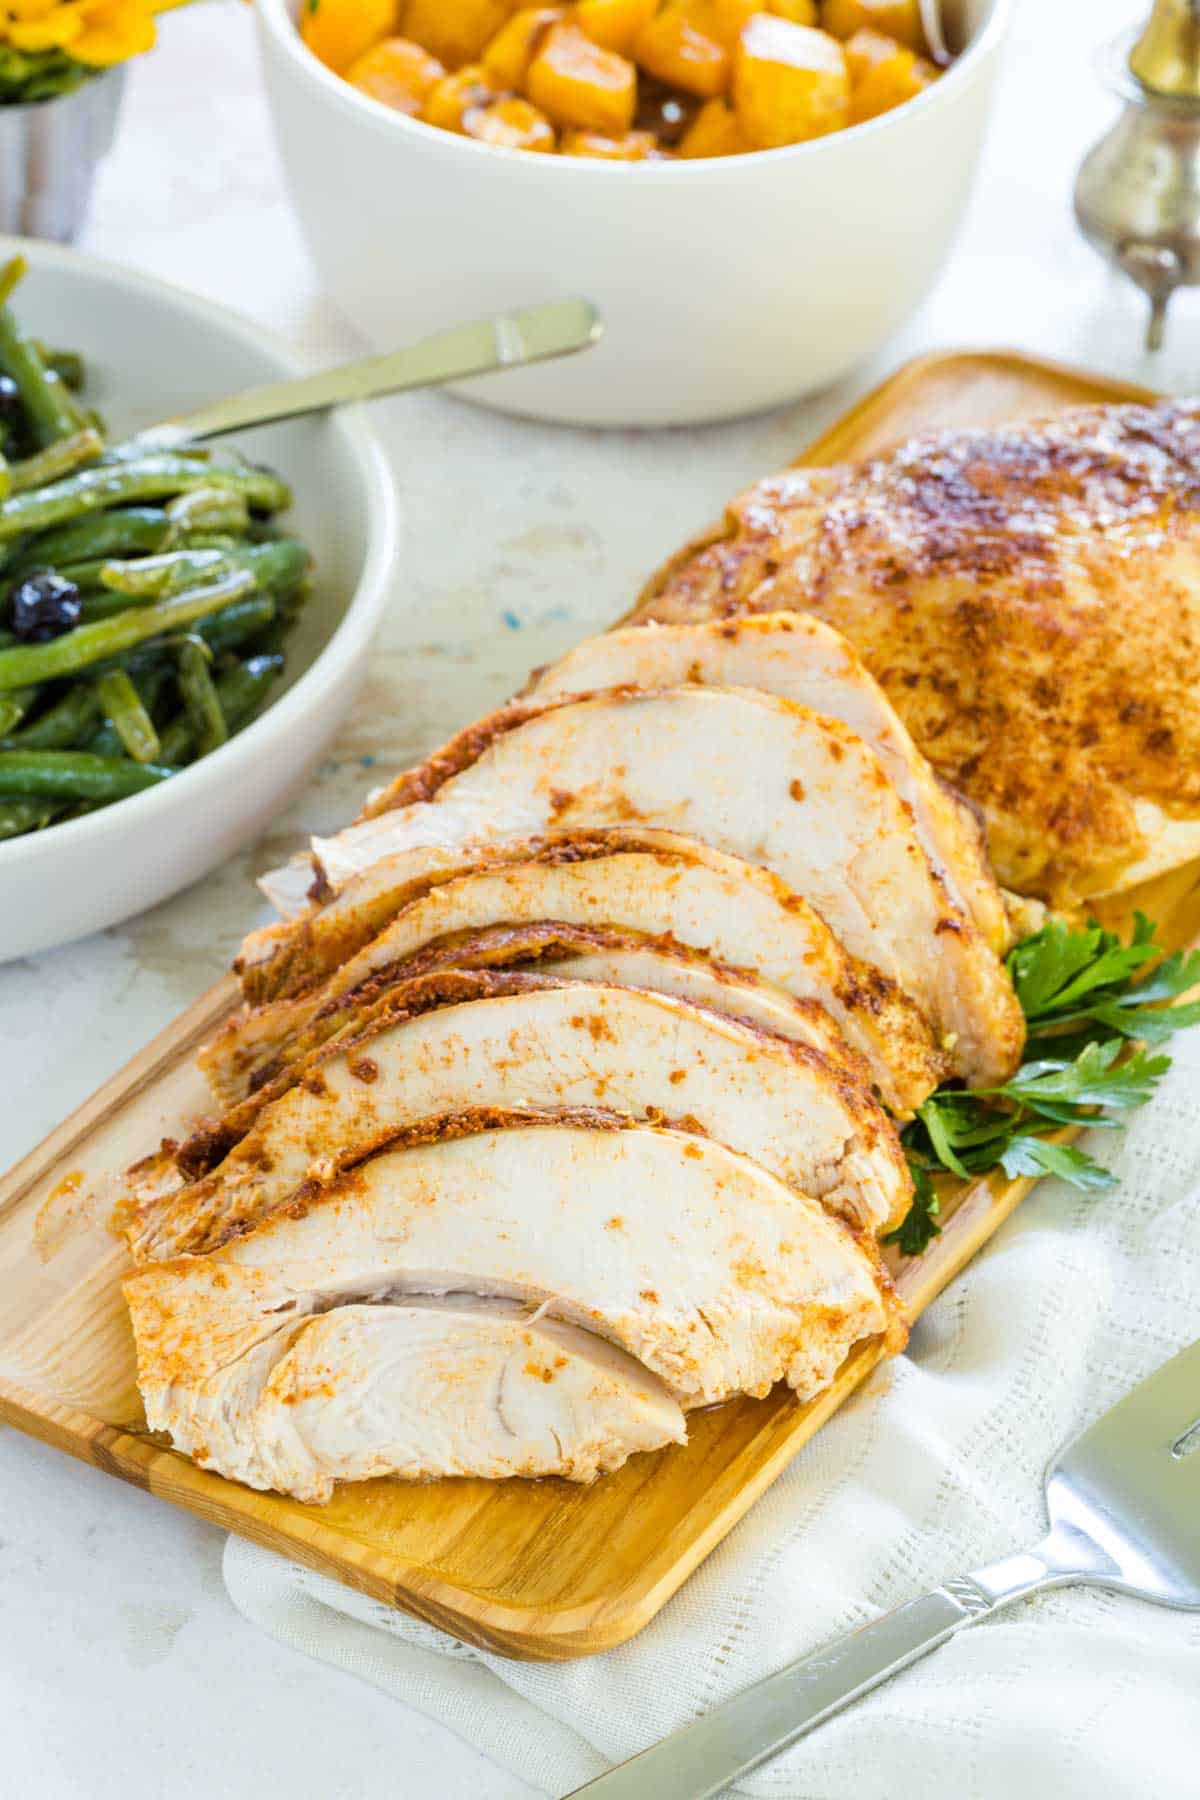 A seasoned turkey breast sliced up on a cutting board.